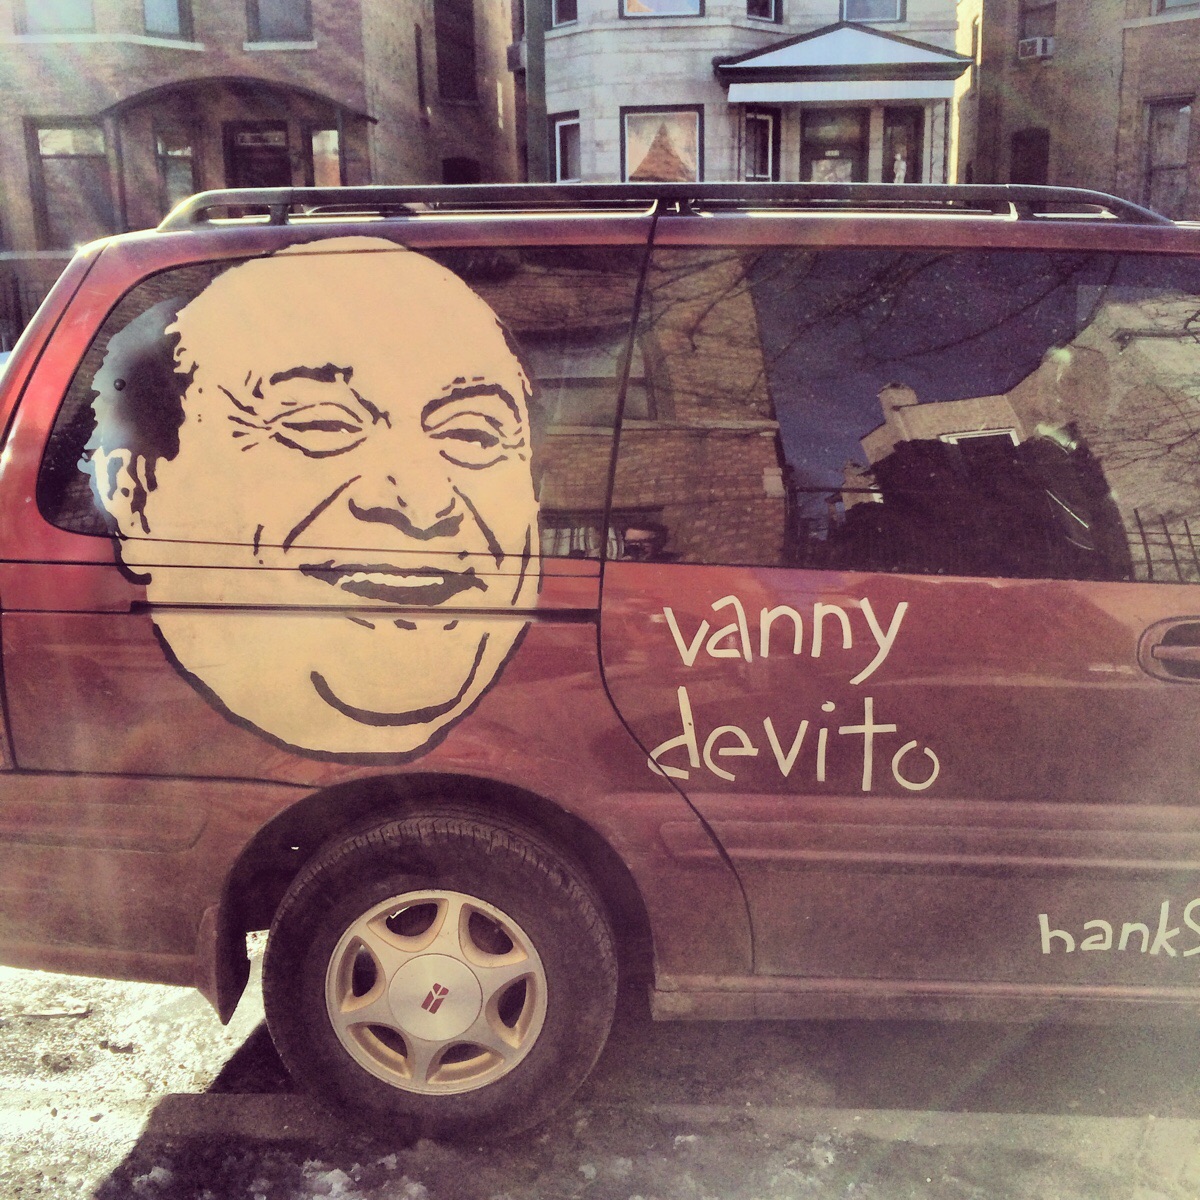 This van is better.